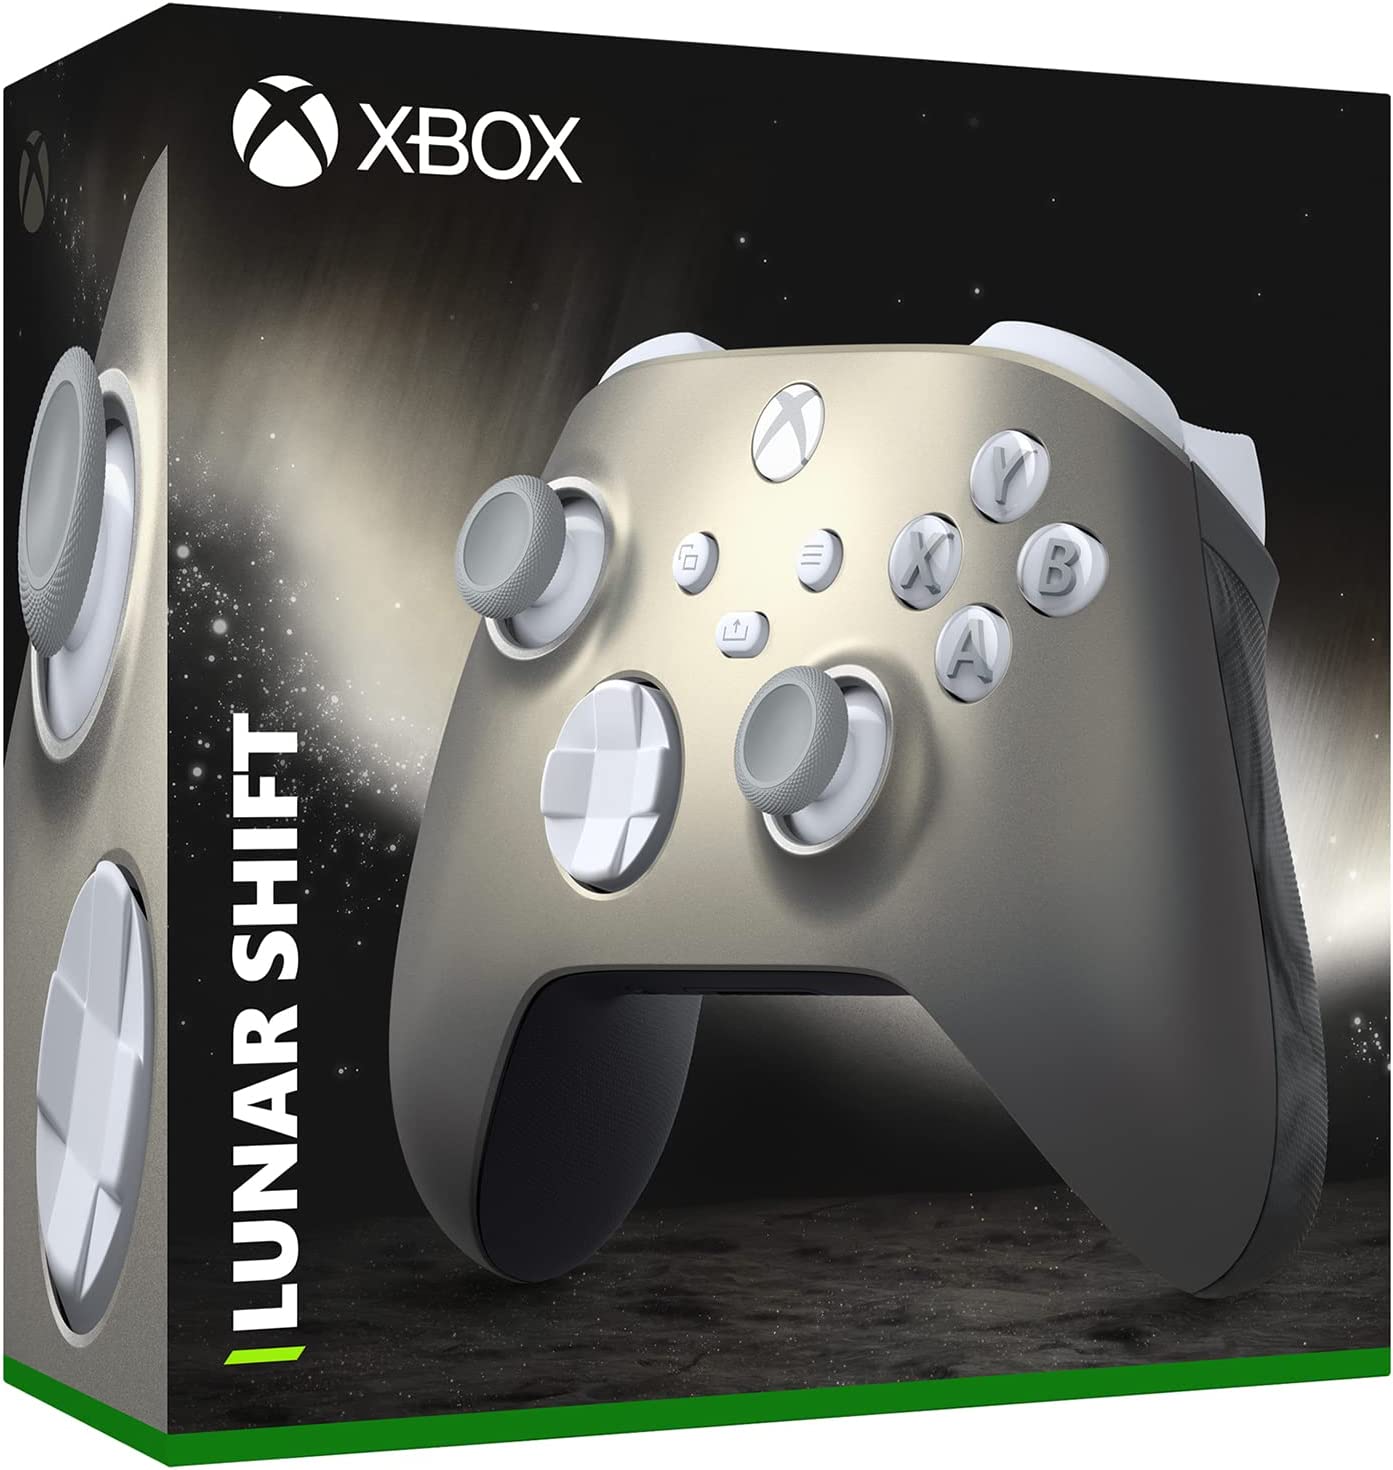 微軟或將推出「Lunar Shift」Xbox手把 附帶變色功能